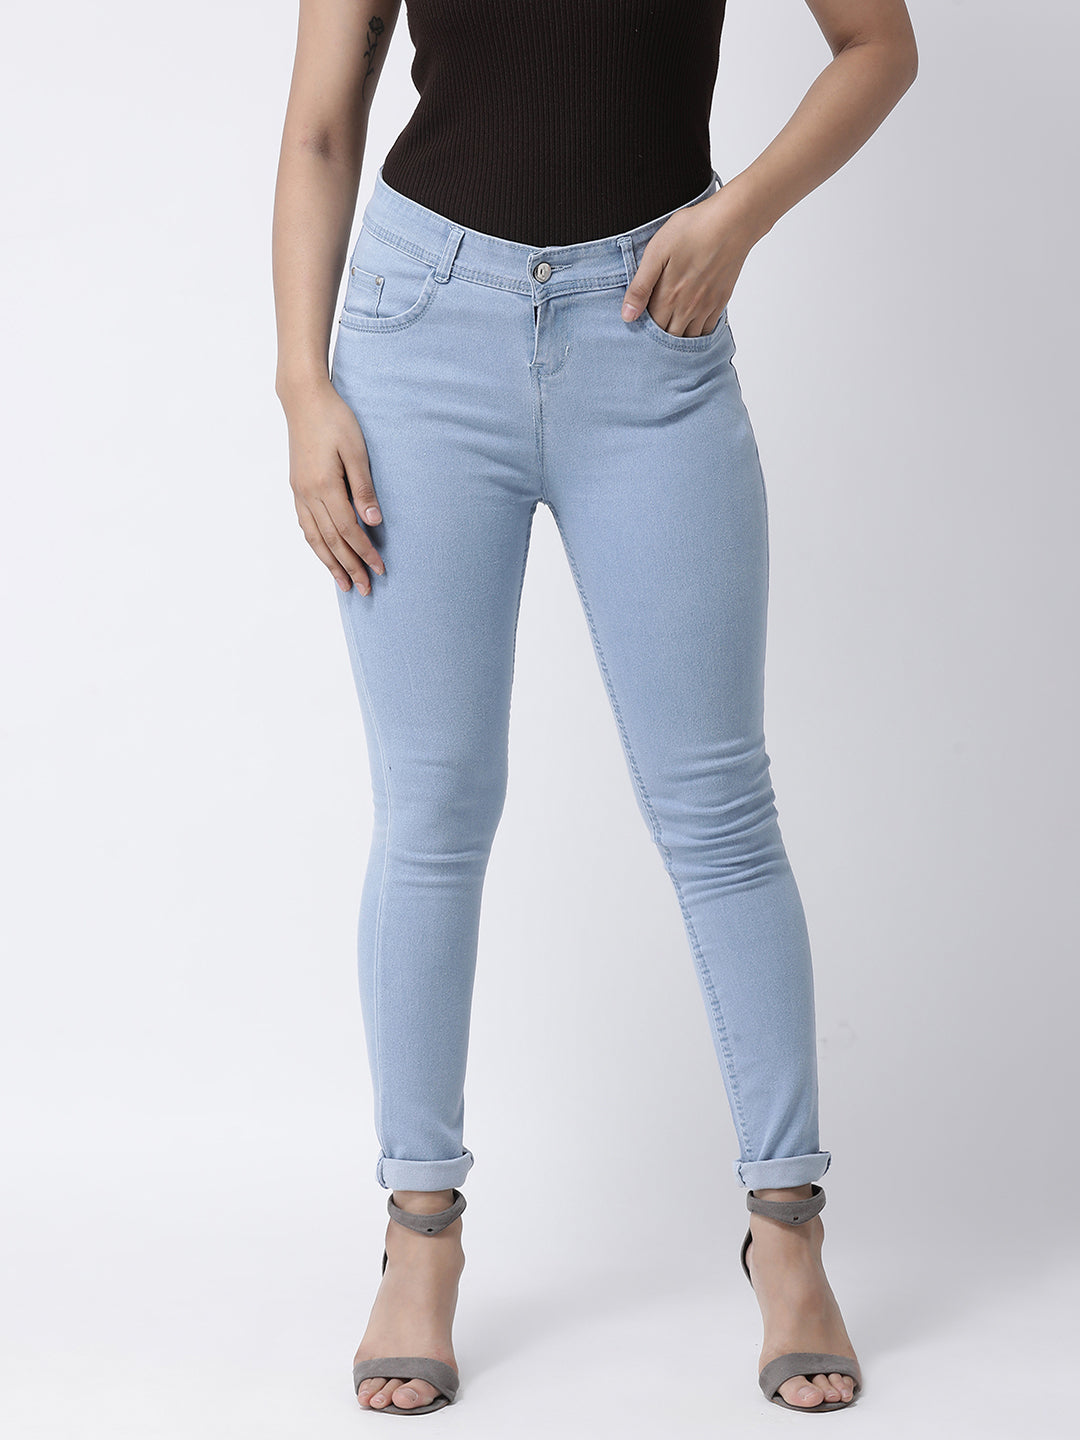 Hangup Women Solid Denim Casual Women Jeans